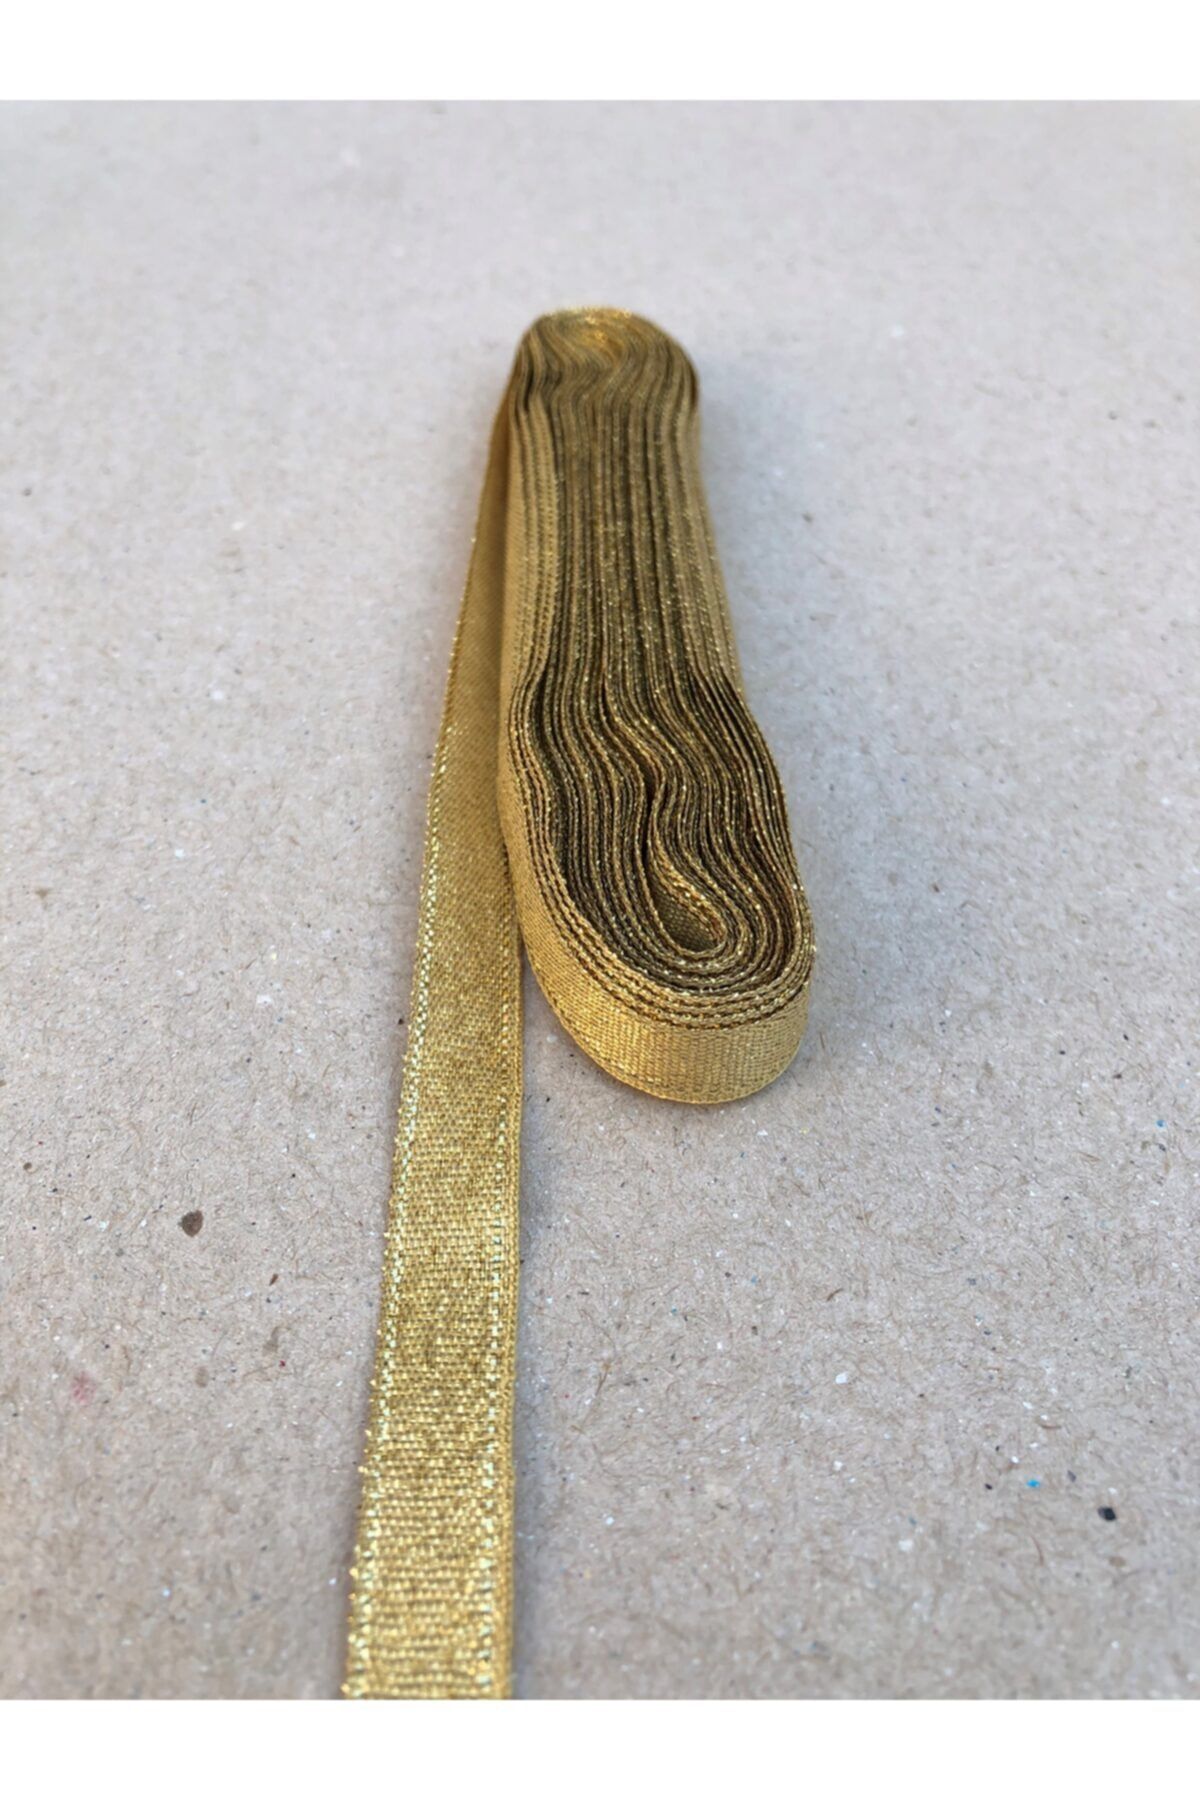 Kreatif Mağaza 10 Metre Altın Simli Kurdele (1 cm En)